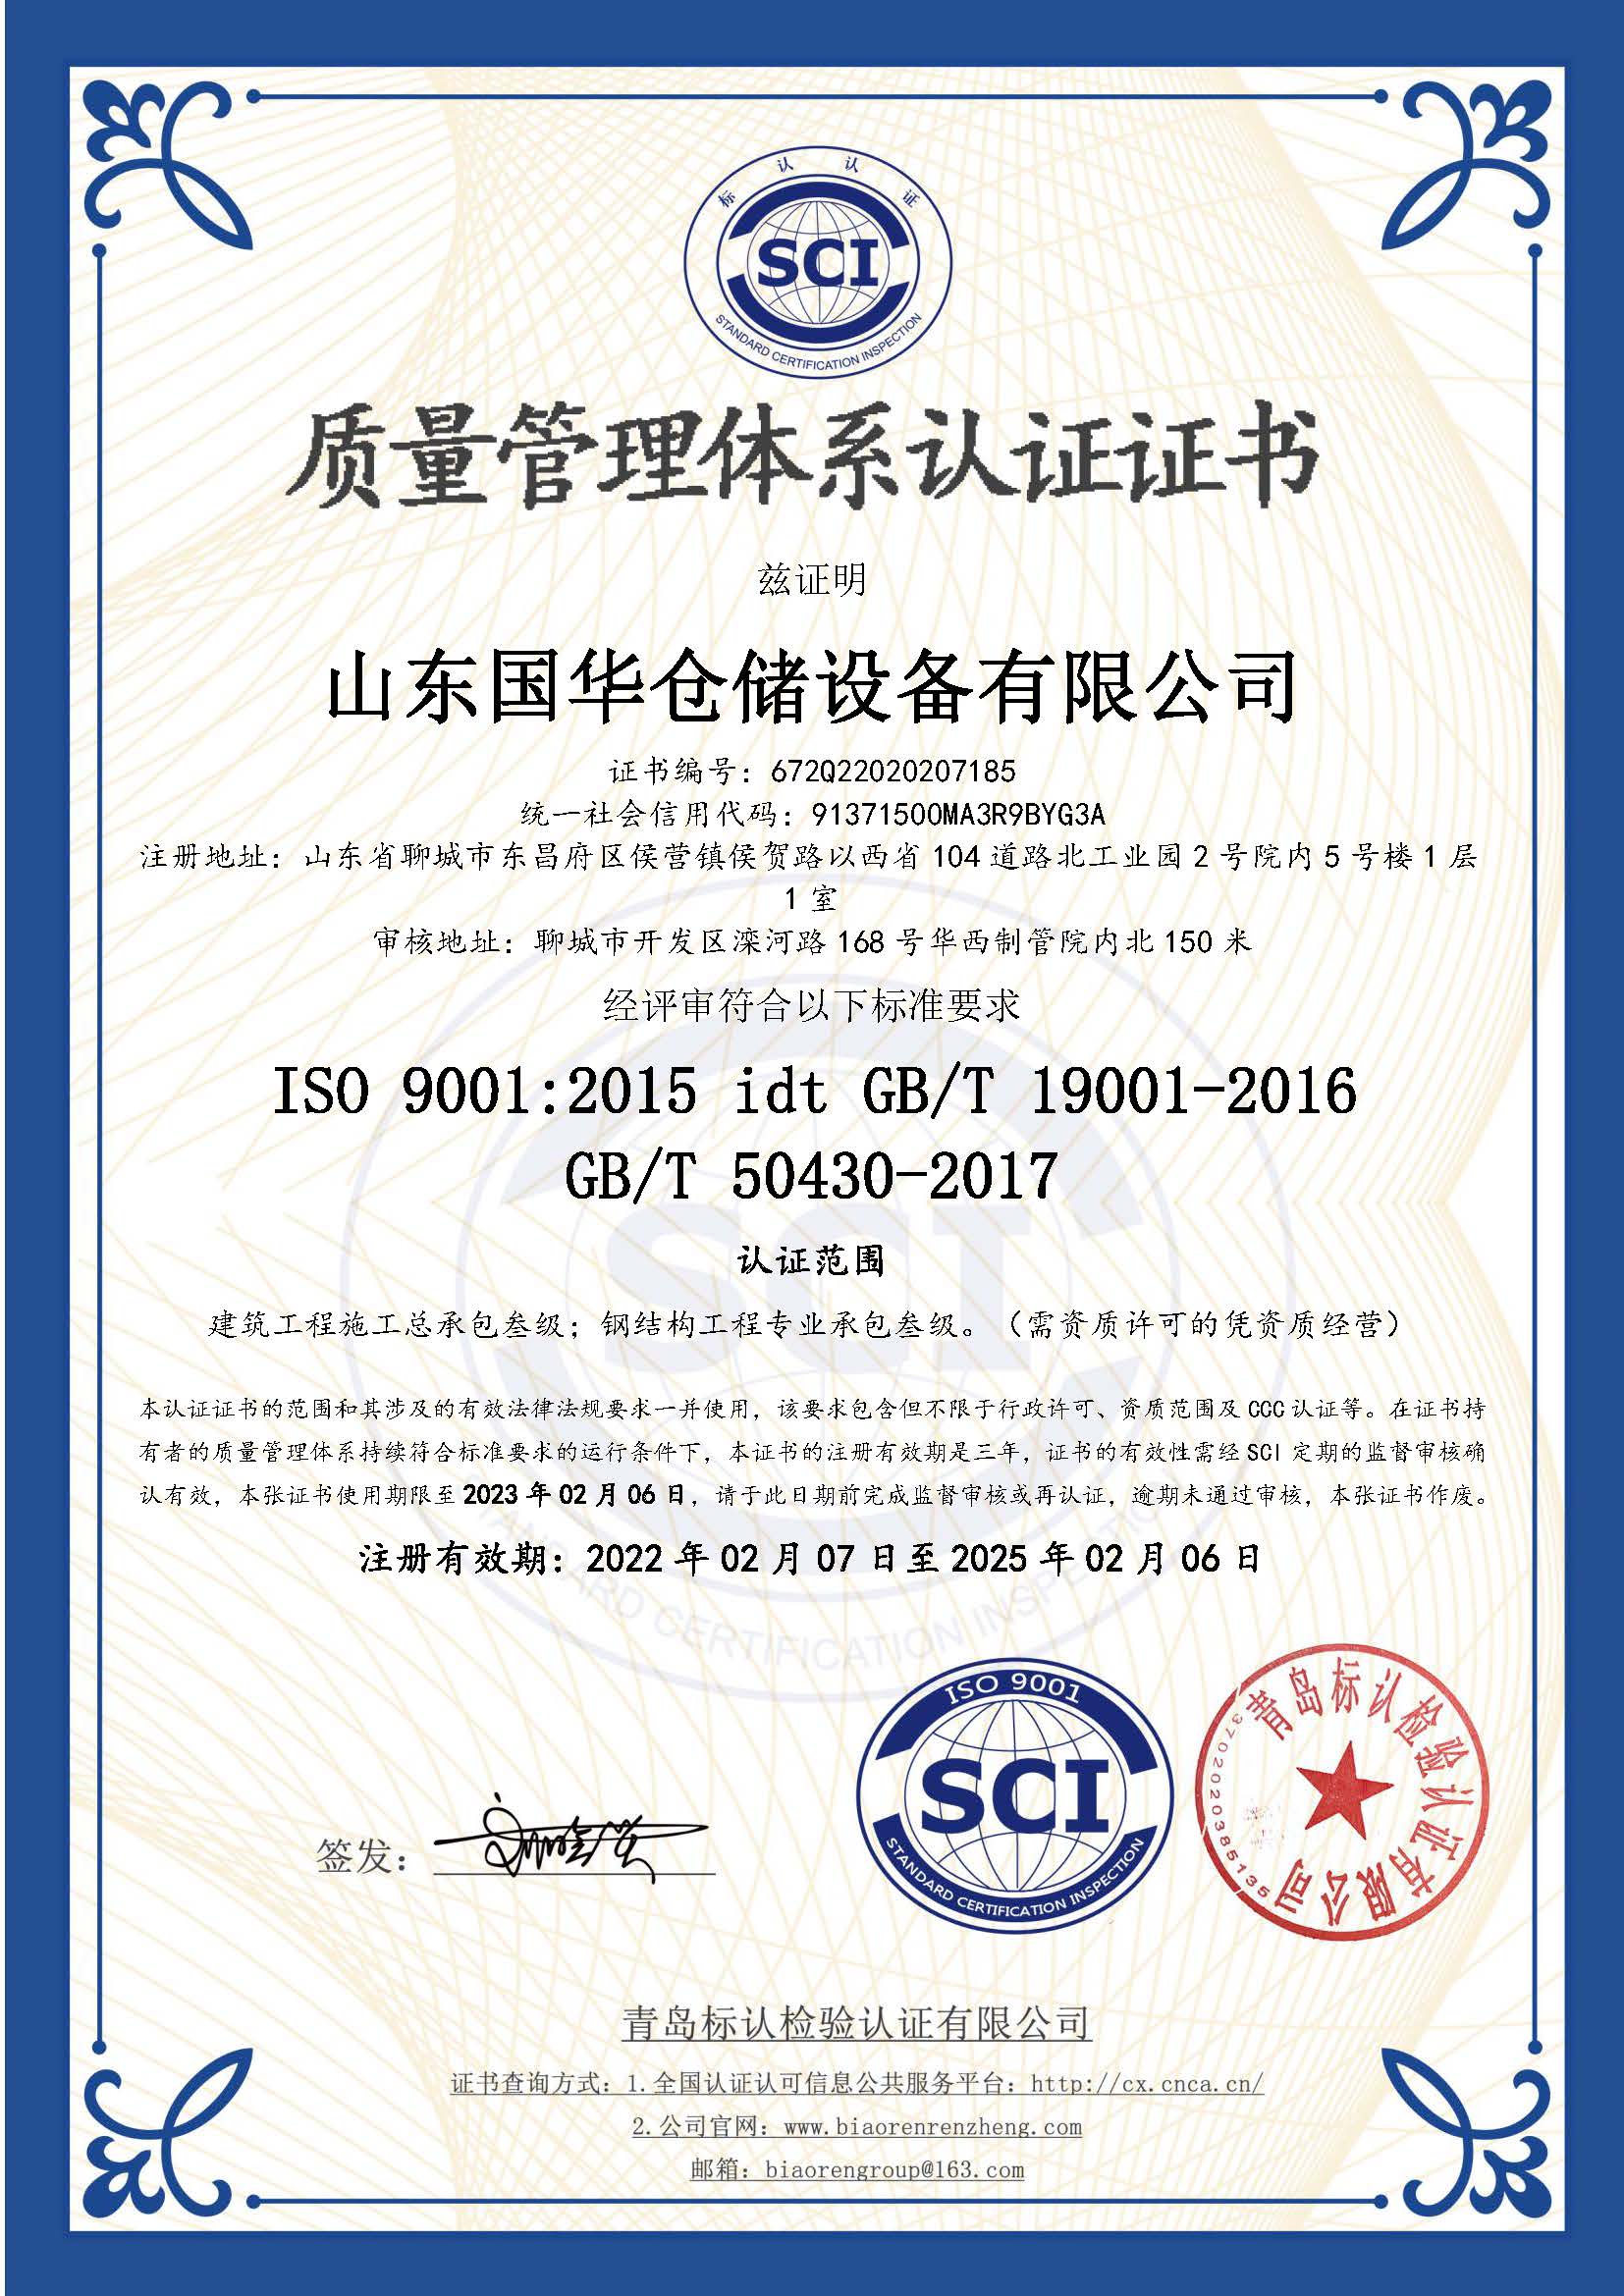 佳木斯钢板仓ISO质量体系认证证书